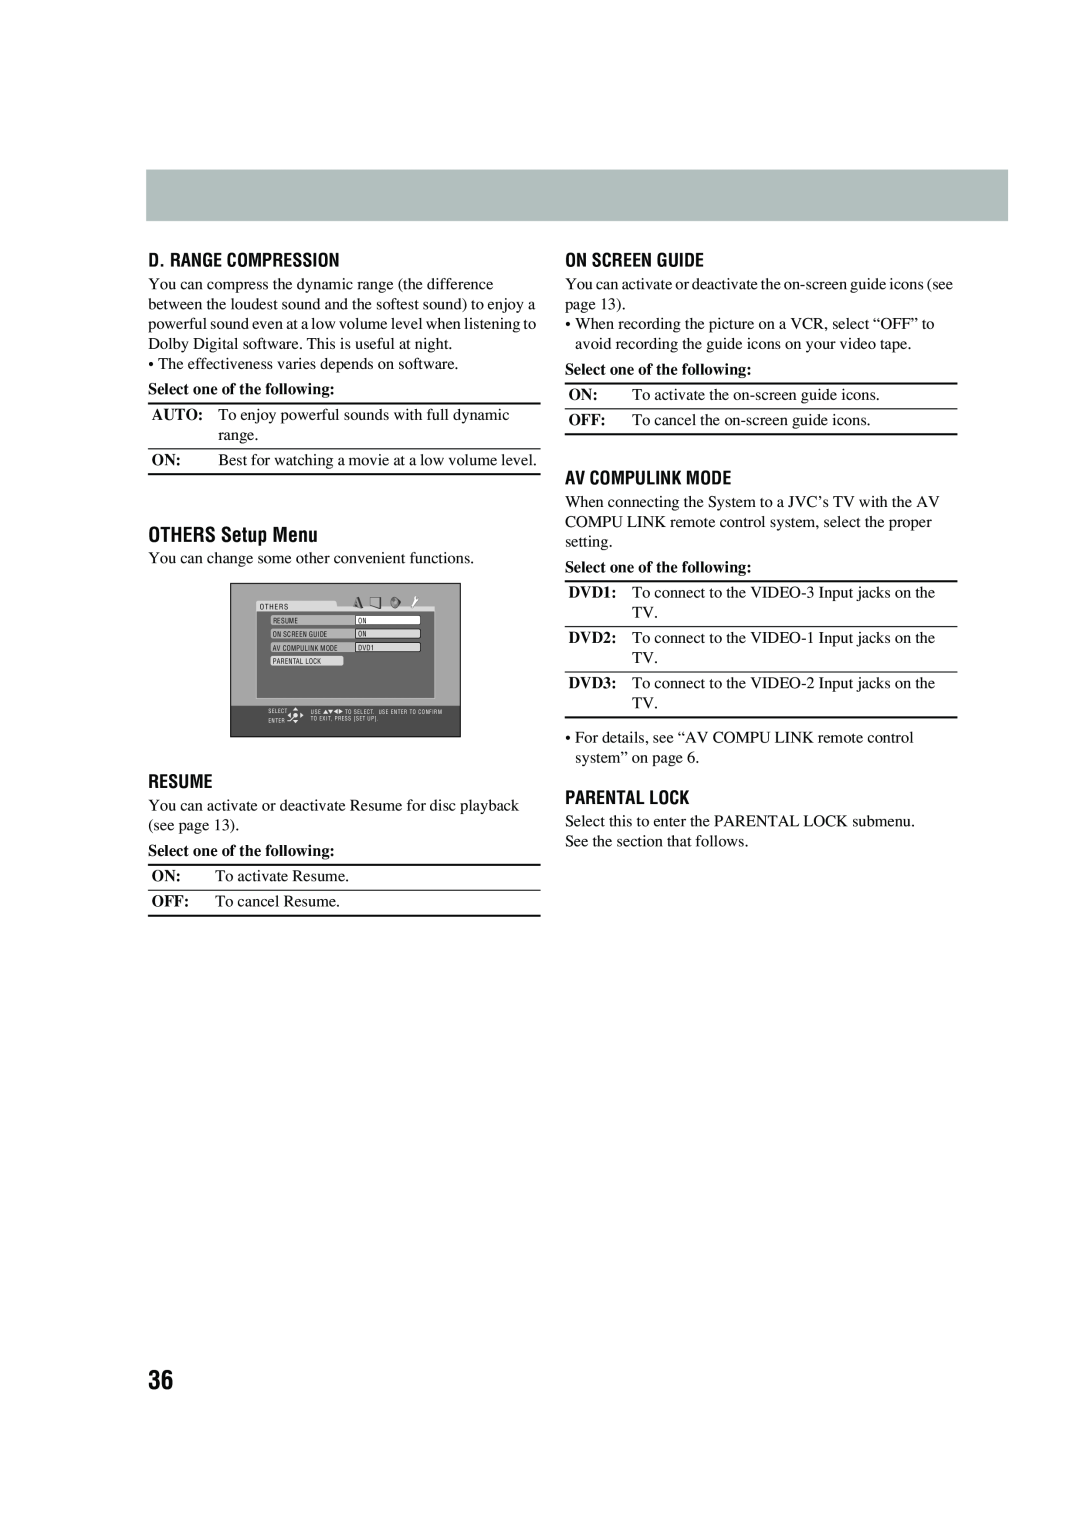 JVC UX-P450 manual OTHERS Setup Menu, D. Range Compression, Resume, On Screen Guide, Av Compulink Mode, Parental Lock 